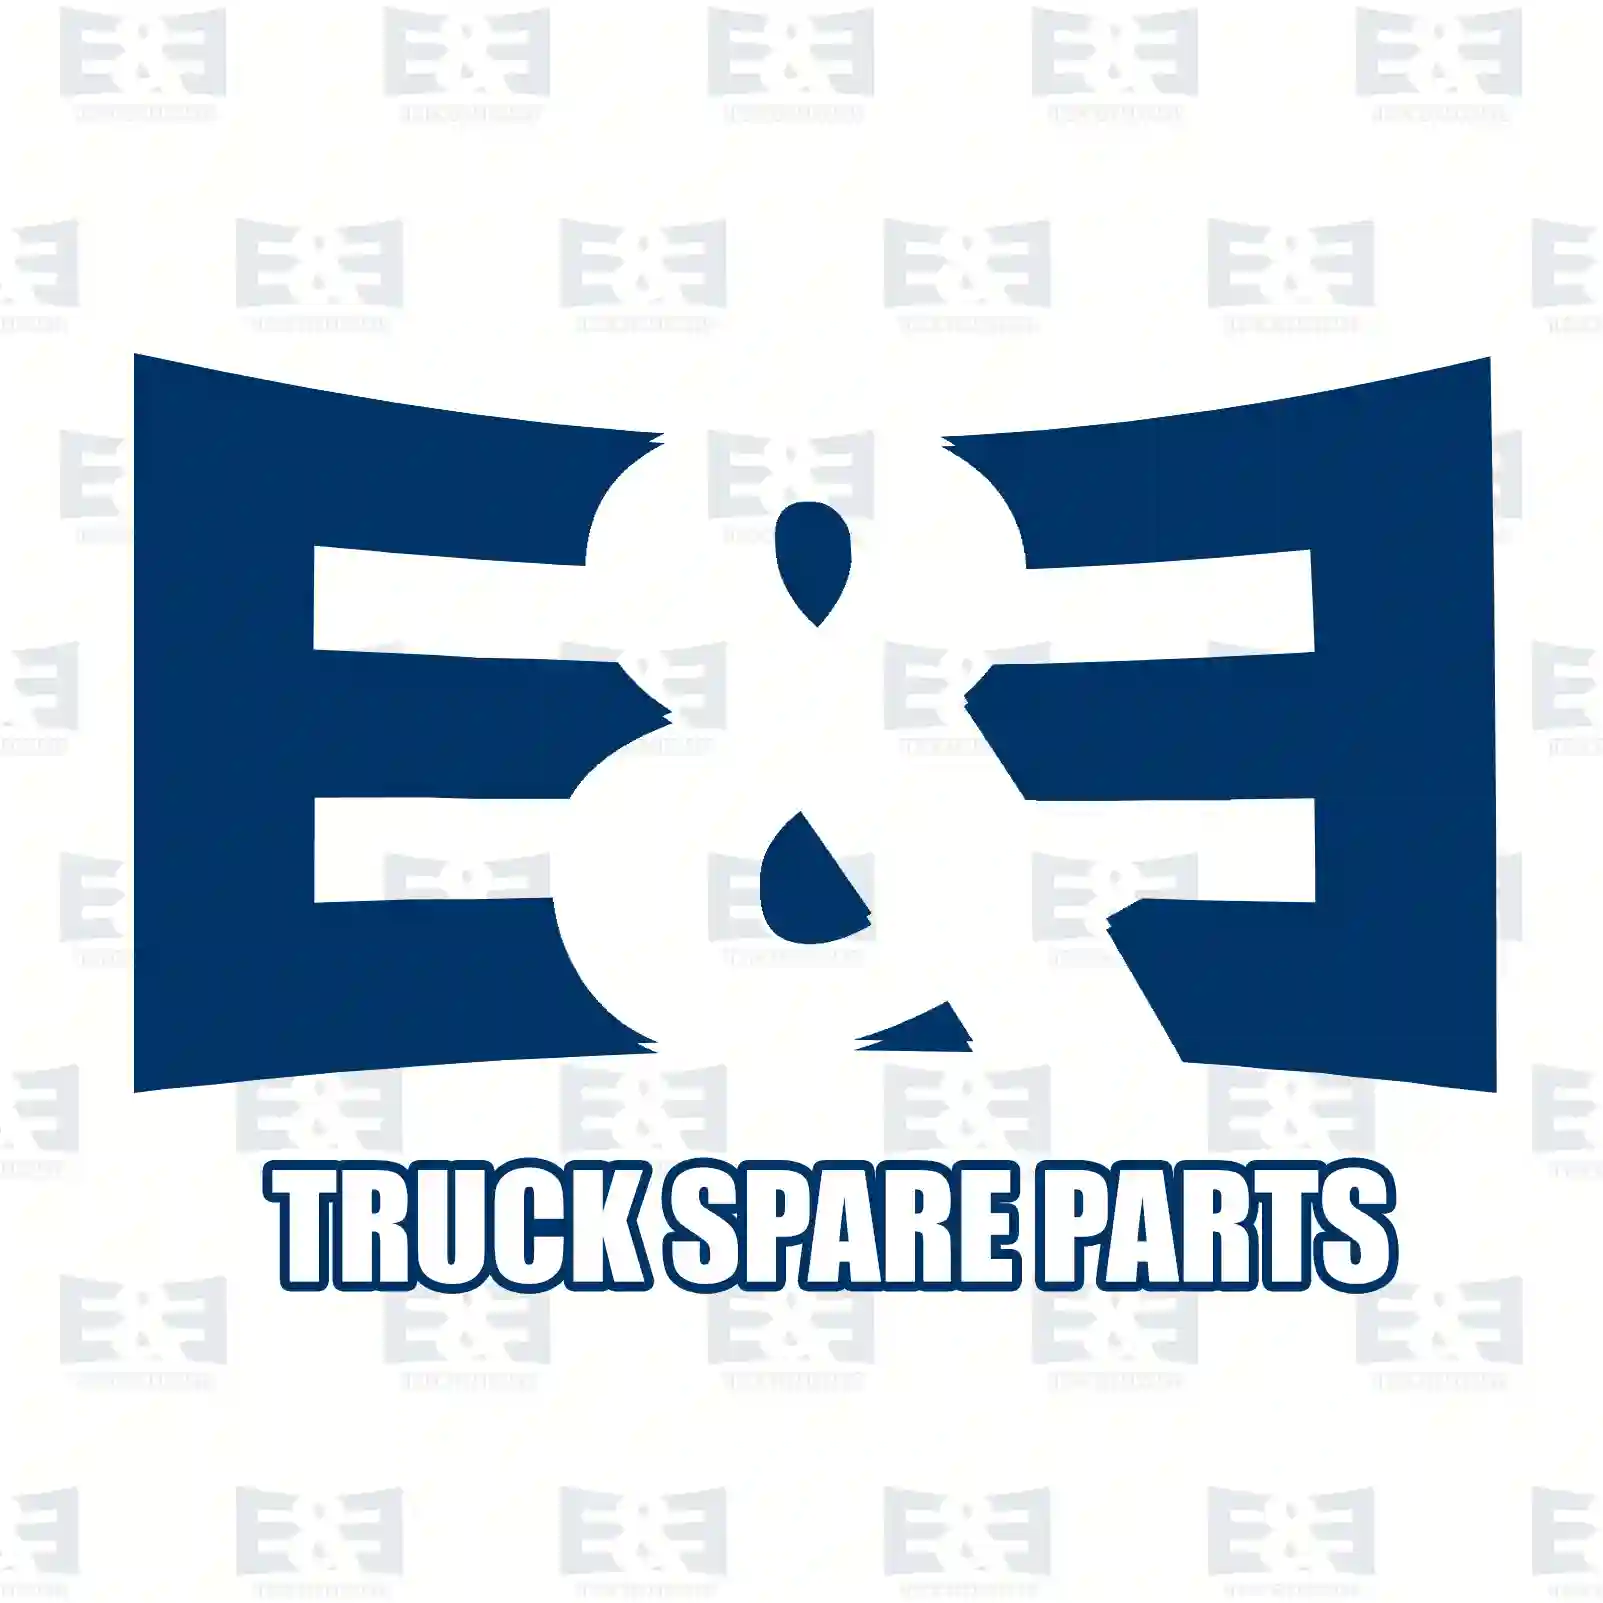 Timing belt kit, 2E2201565, 083190, 083191, 083190, 083191 ||  2E2201565 E&E Truck Spare Parts | Truck Spare Parts, Auotomotive Spare Parts Timing belt kit, 2E2201565, 083190, 083191, 083190, 083191 ||  2E2201565 E&E Truck Spare Parts | Truck Spare Parts, Auotomotive Spare Parts